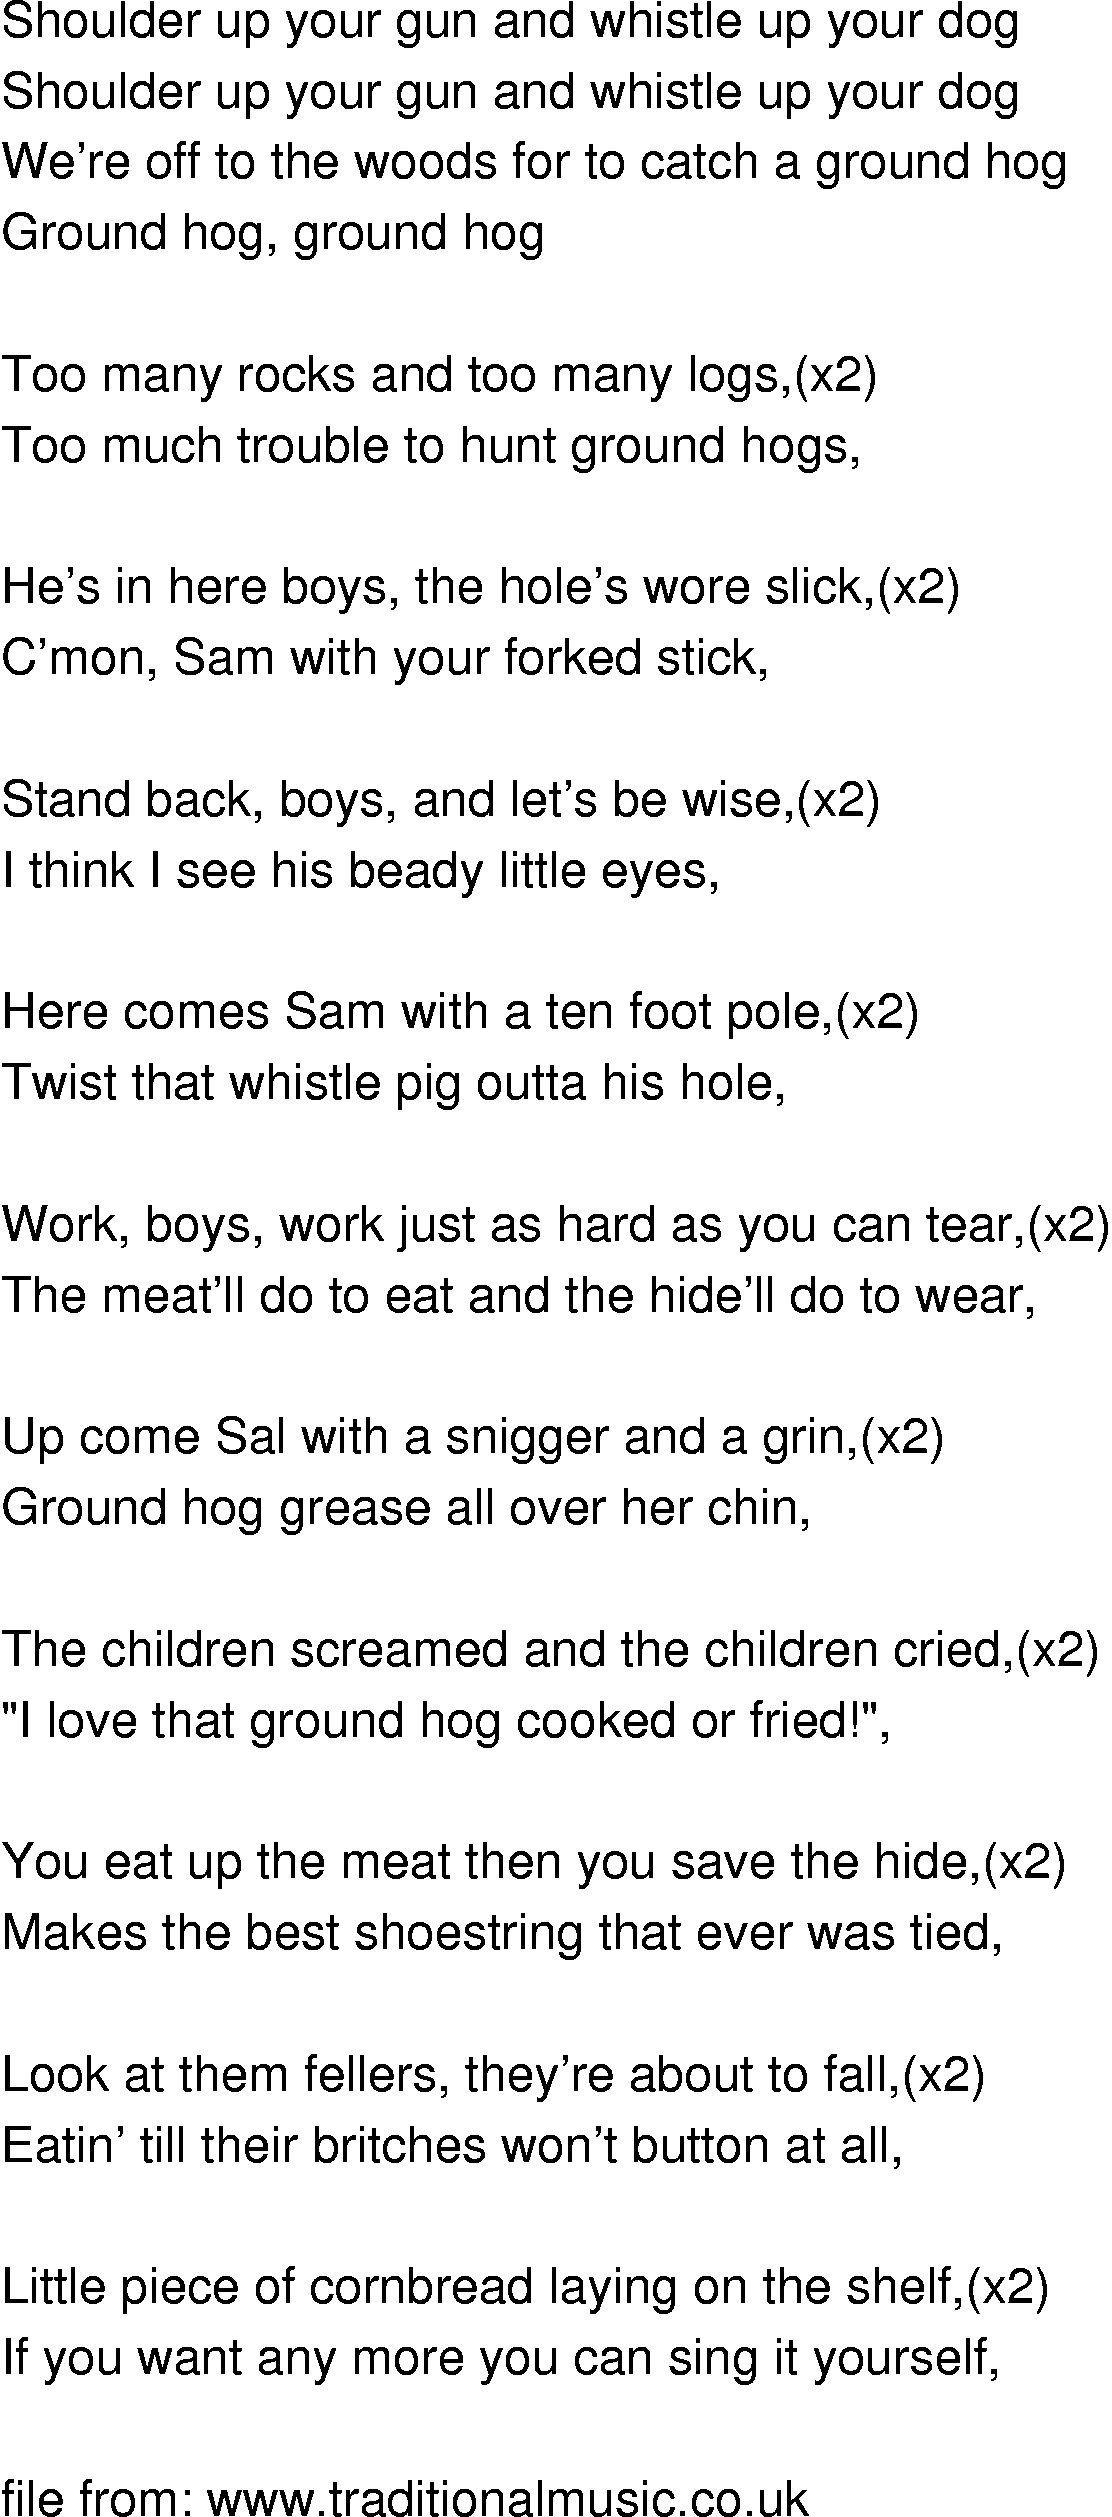 Old-Time (oldtimey) Song Lyrics - ground hog